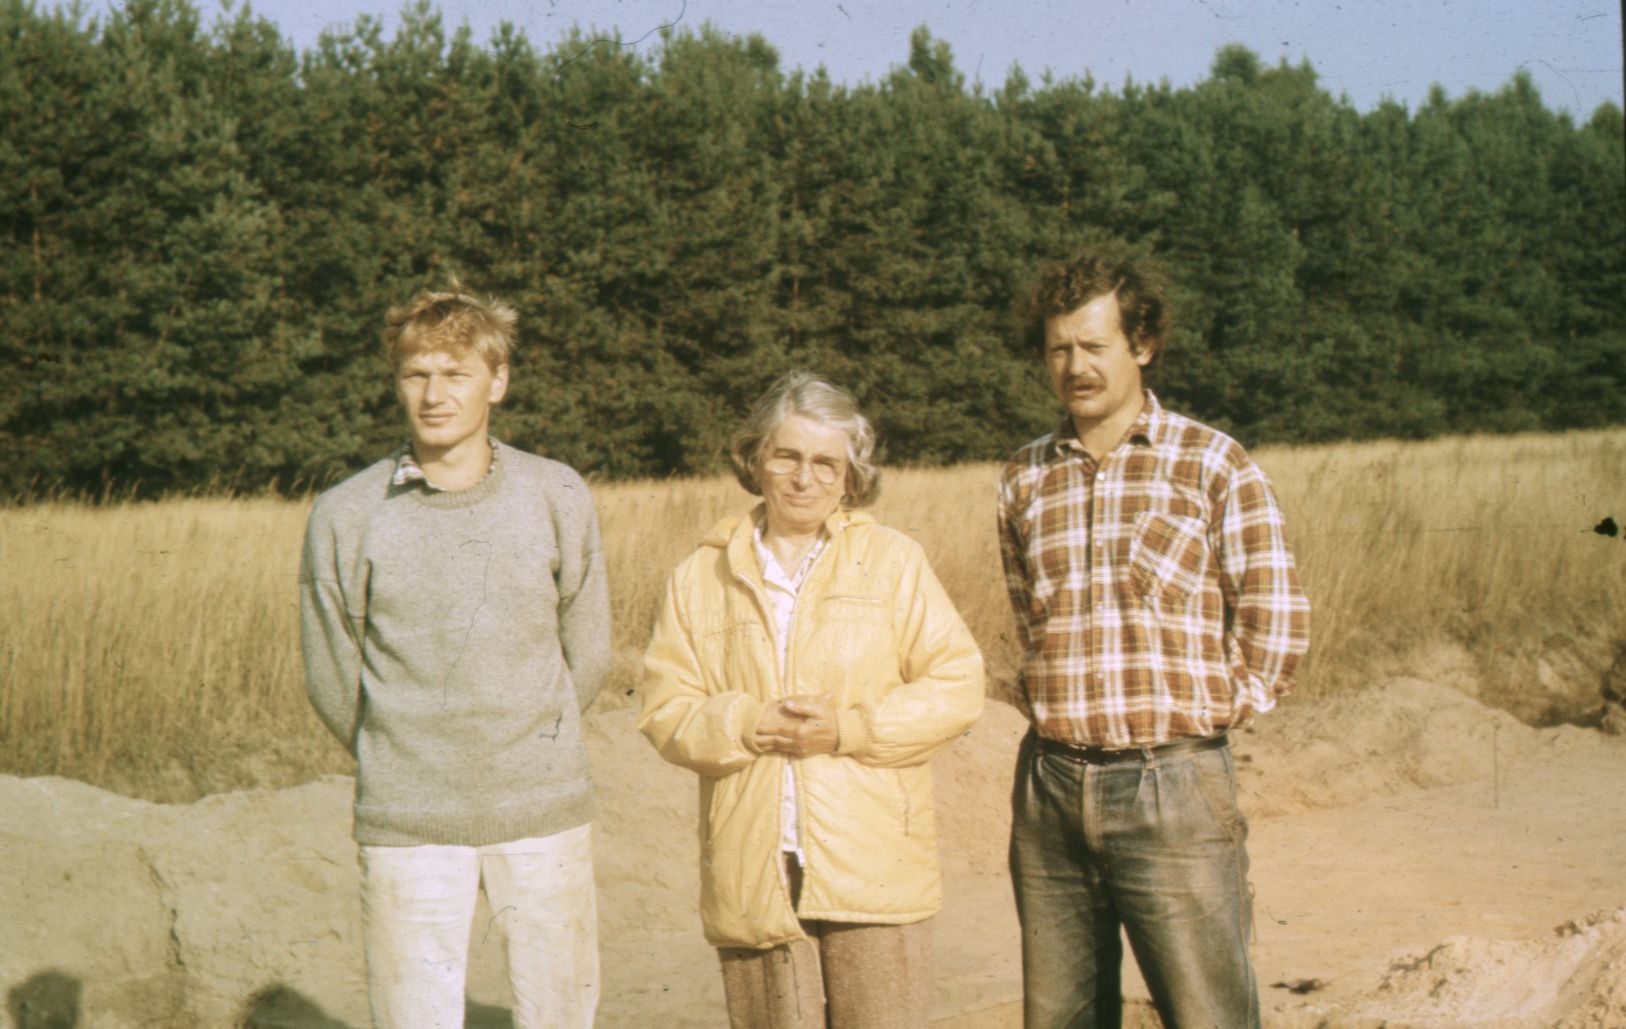 od lewej dr Piotr Papiernik, Eleonora Kaszewska i dr Wojciech Siciński, zdjęcie wykonane podczas badań archeologicznych, w tle ściana lasu